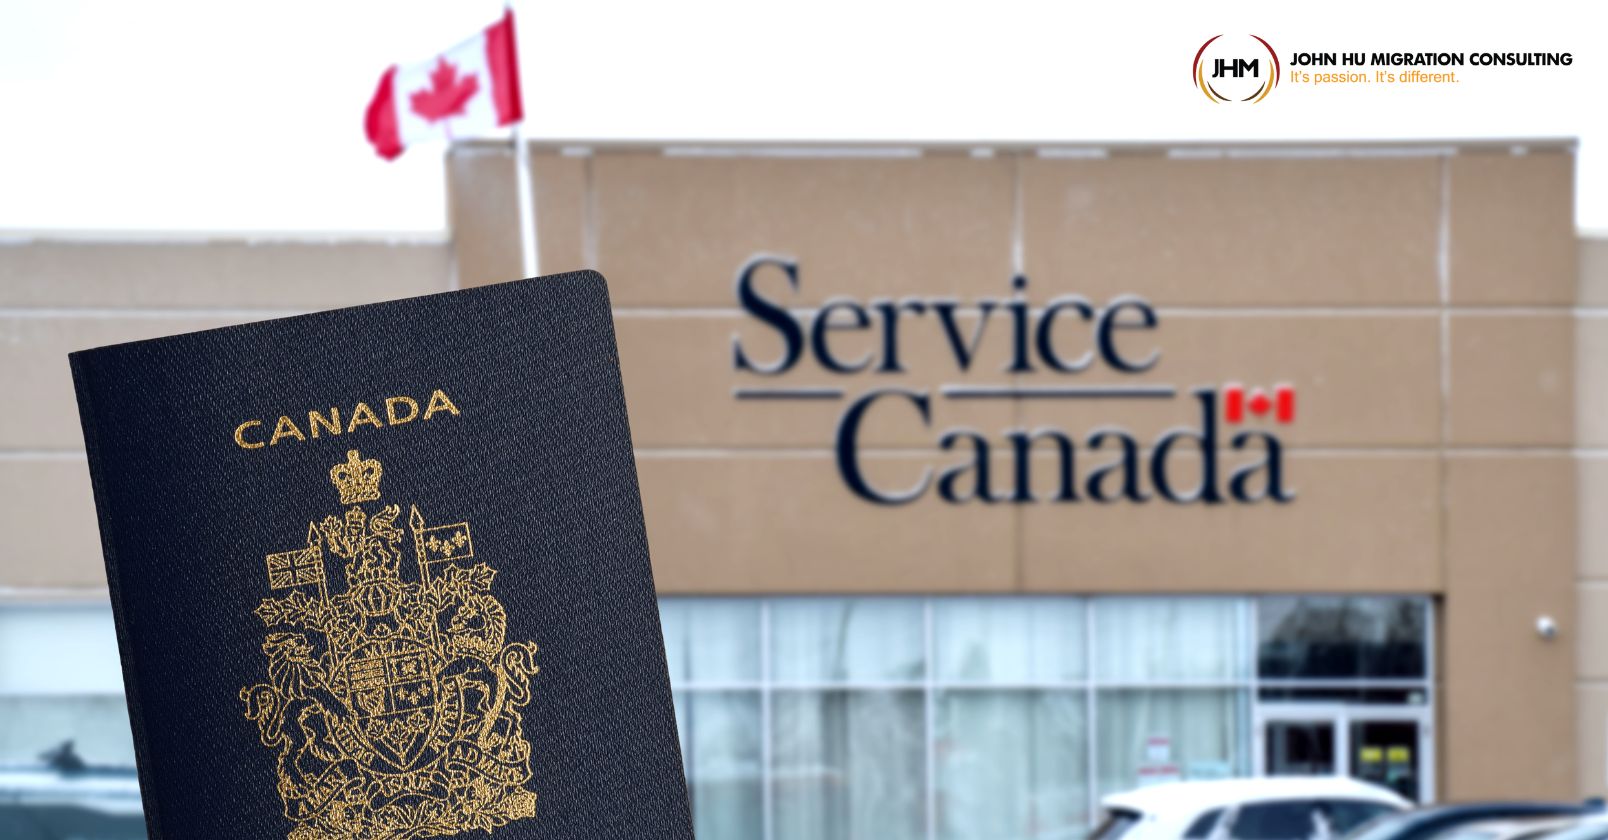 Số nhà đầu tư nộp hồ sơ định cư Canada diện Khởi nghiệp (Start-up Visa) tăng mạnh trong tháng 8_John Hu Migration